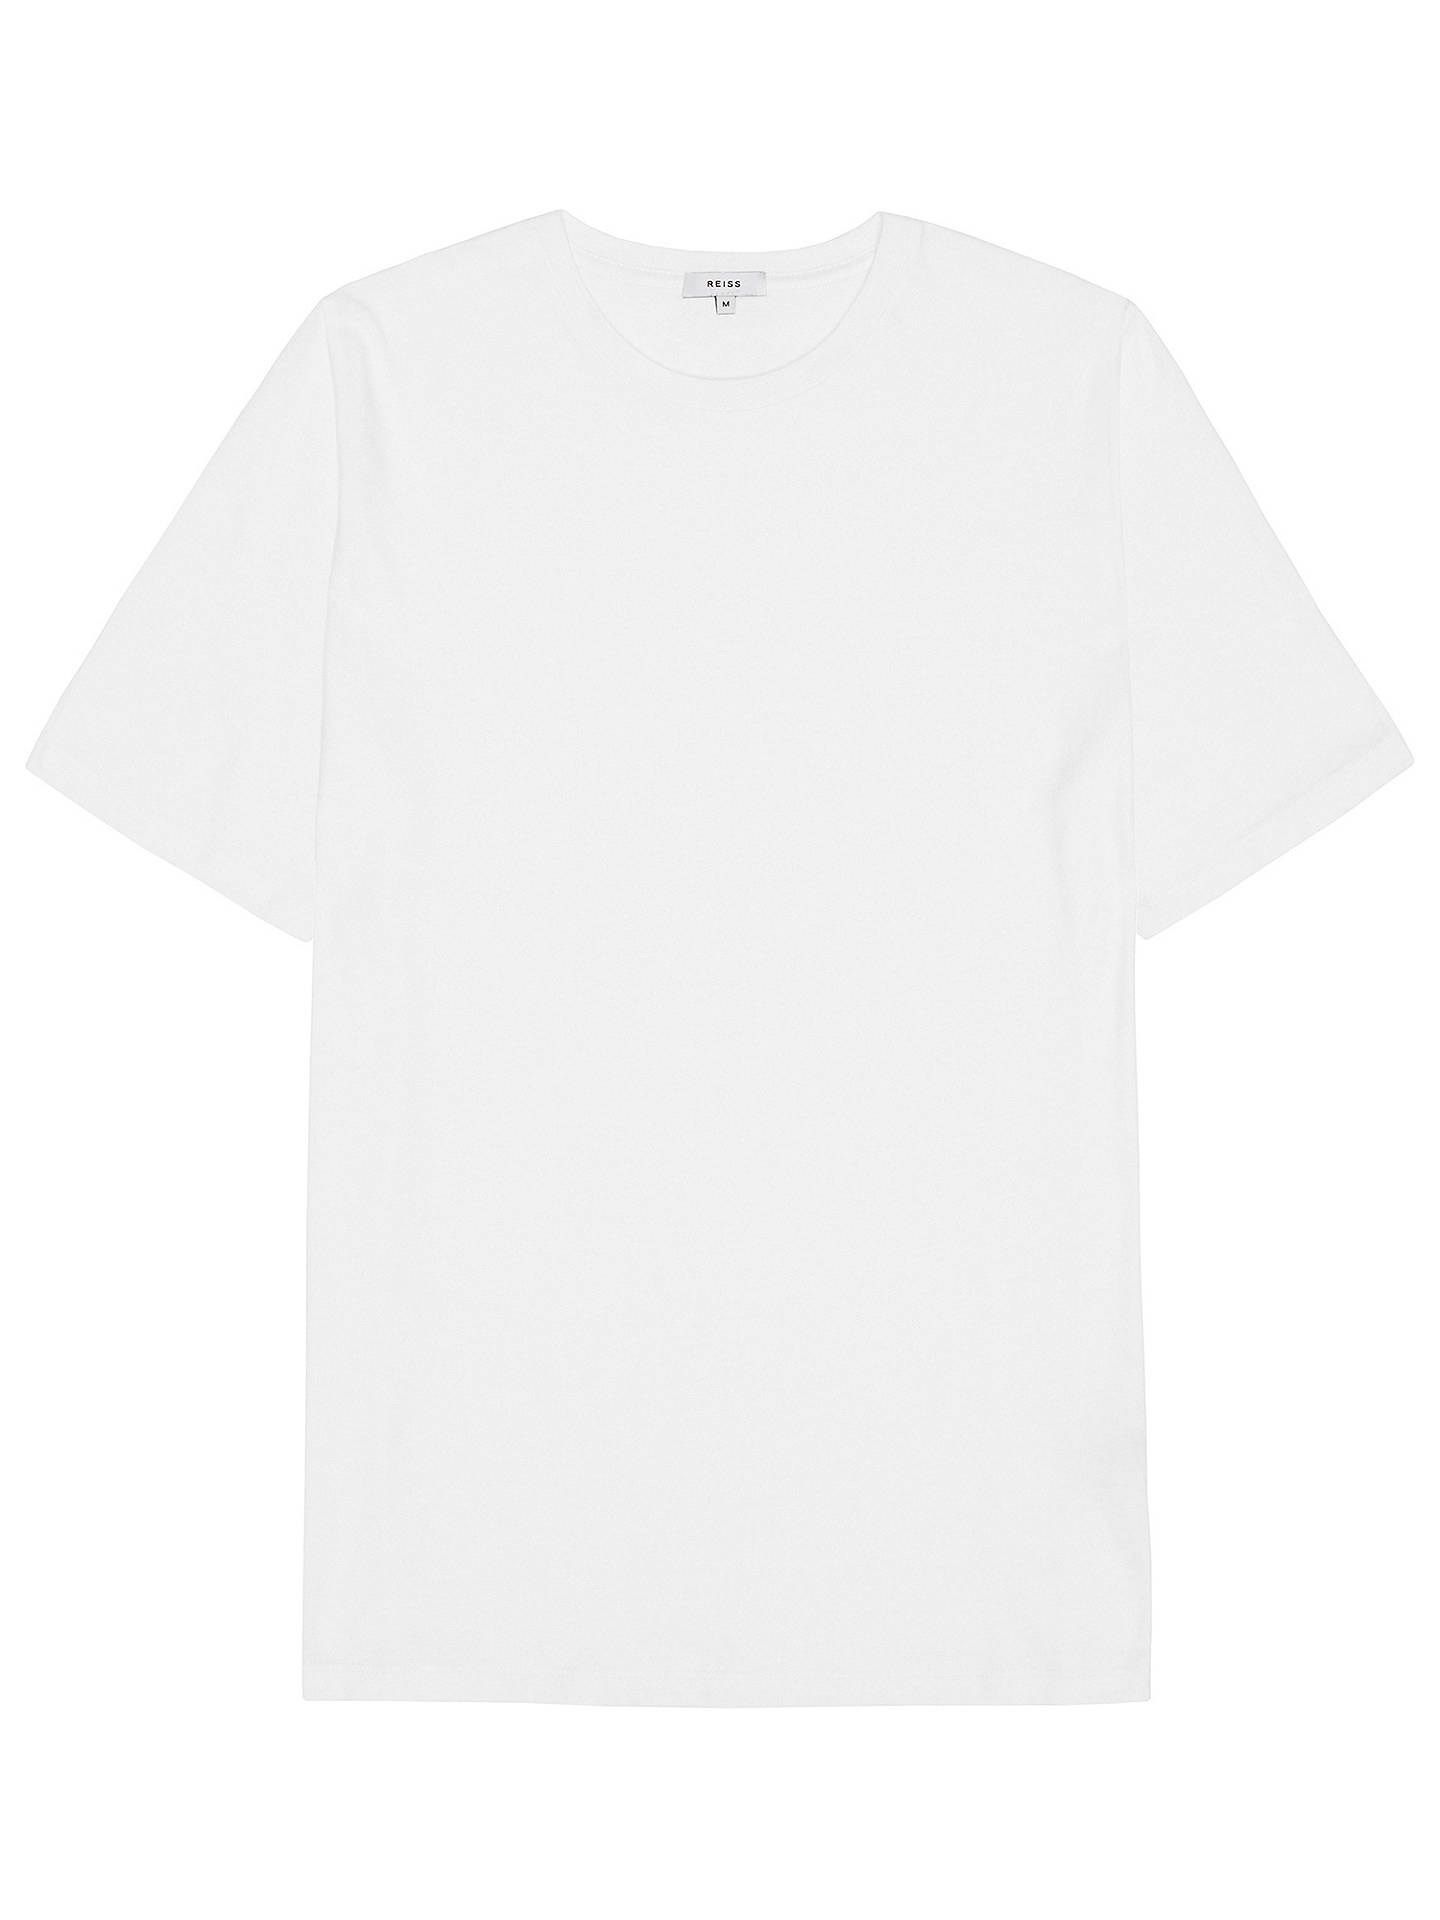 Reiss Bless Cotton White Crew Neck T-Shirt